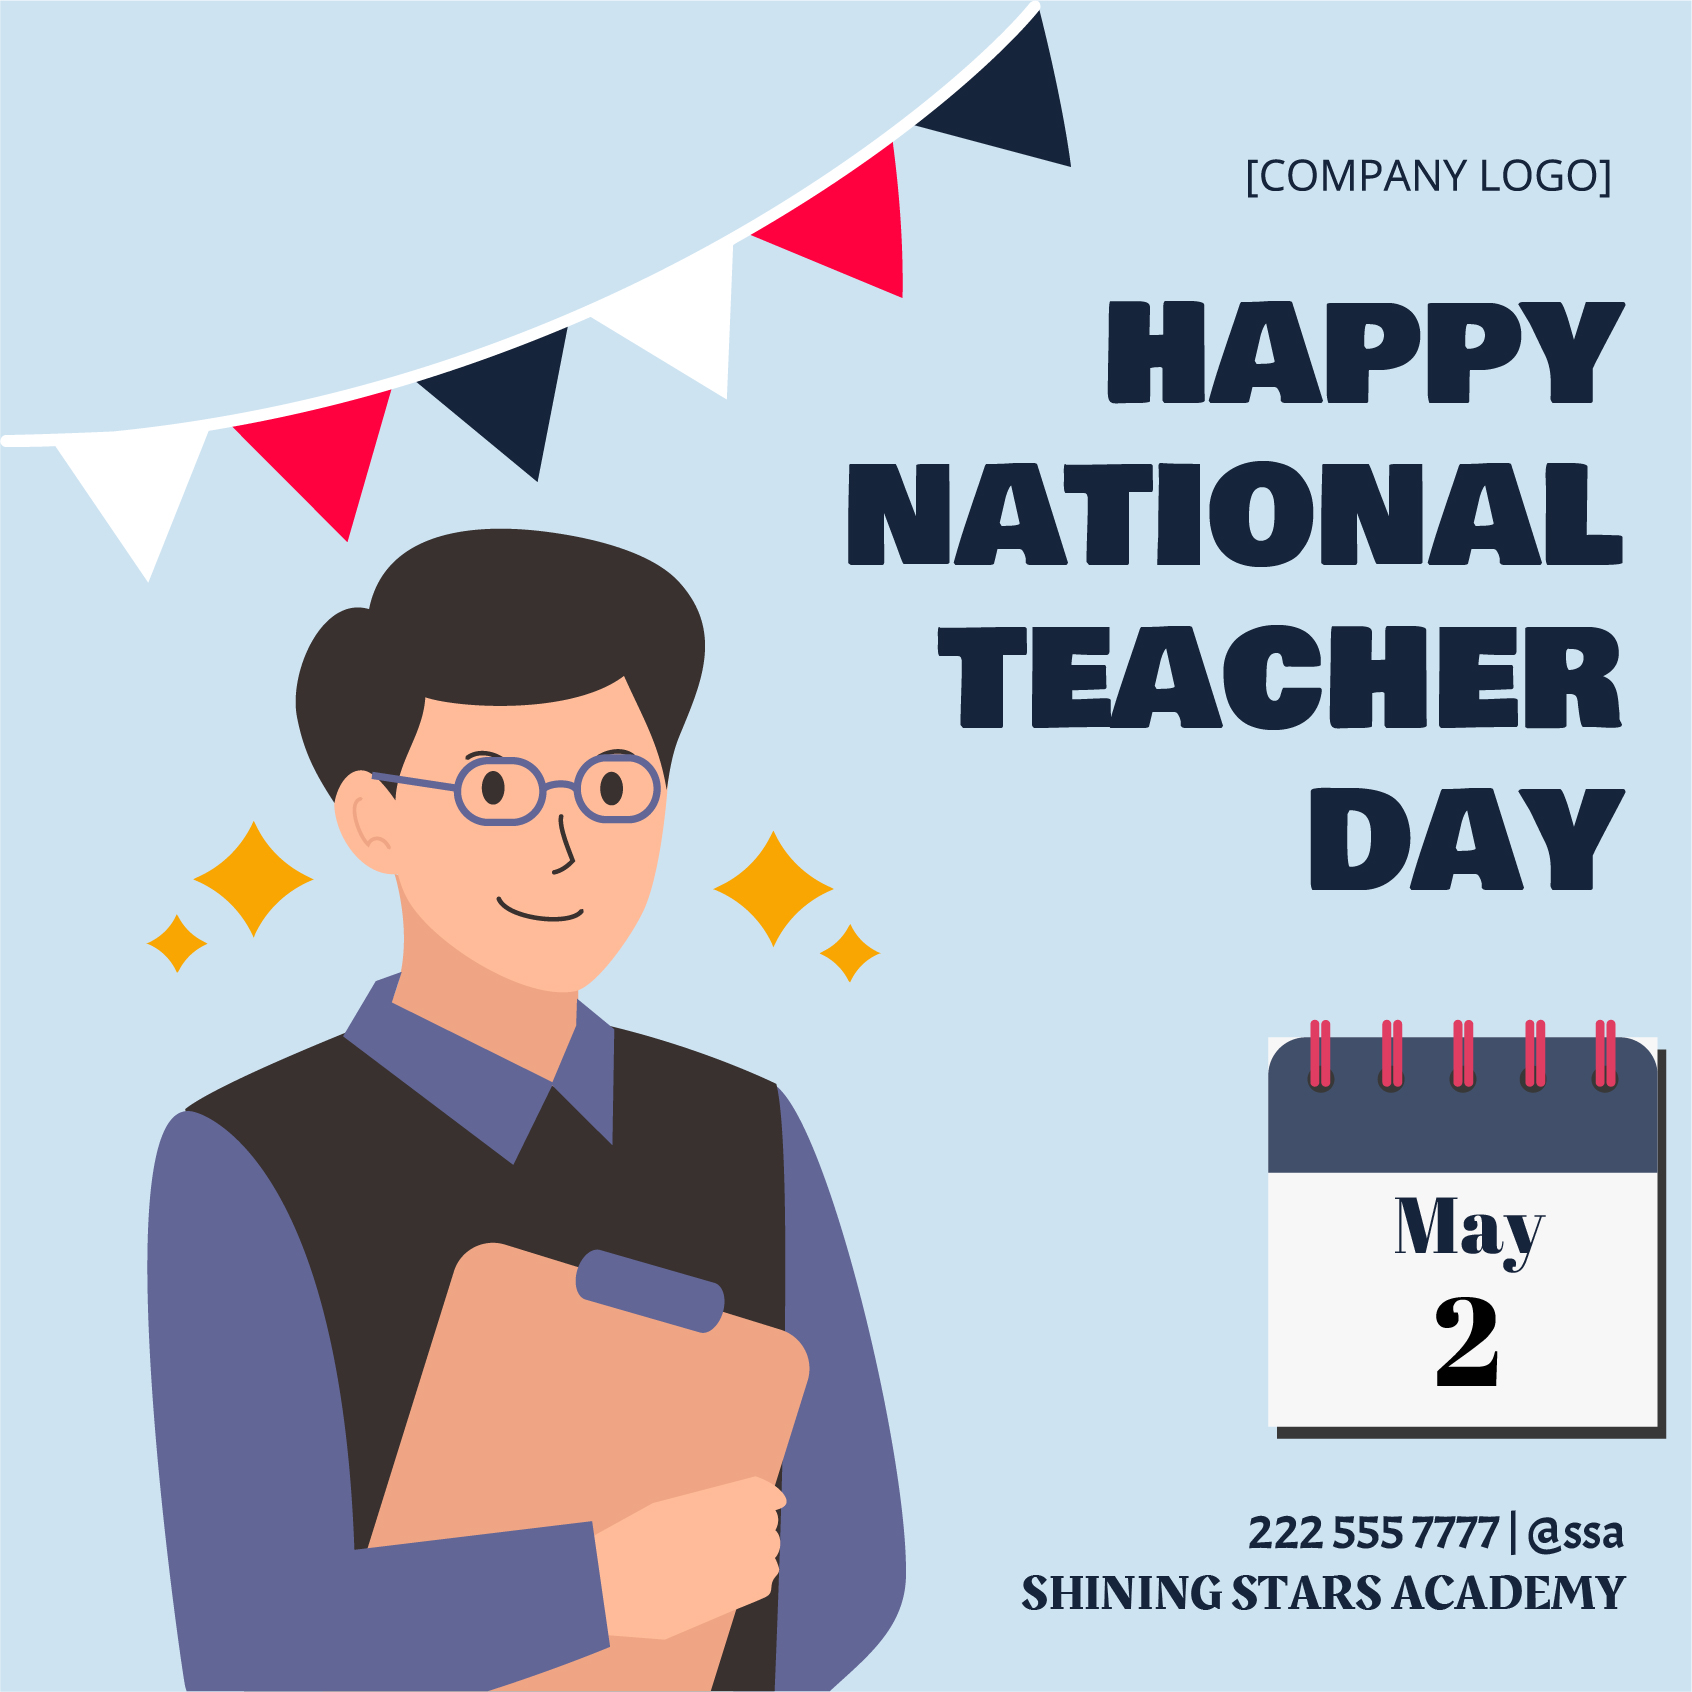 National Teacher Day Poster Vector in EPS, Illustrator, JPG, PSD, PNG